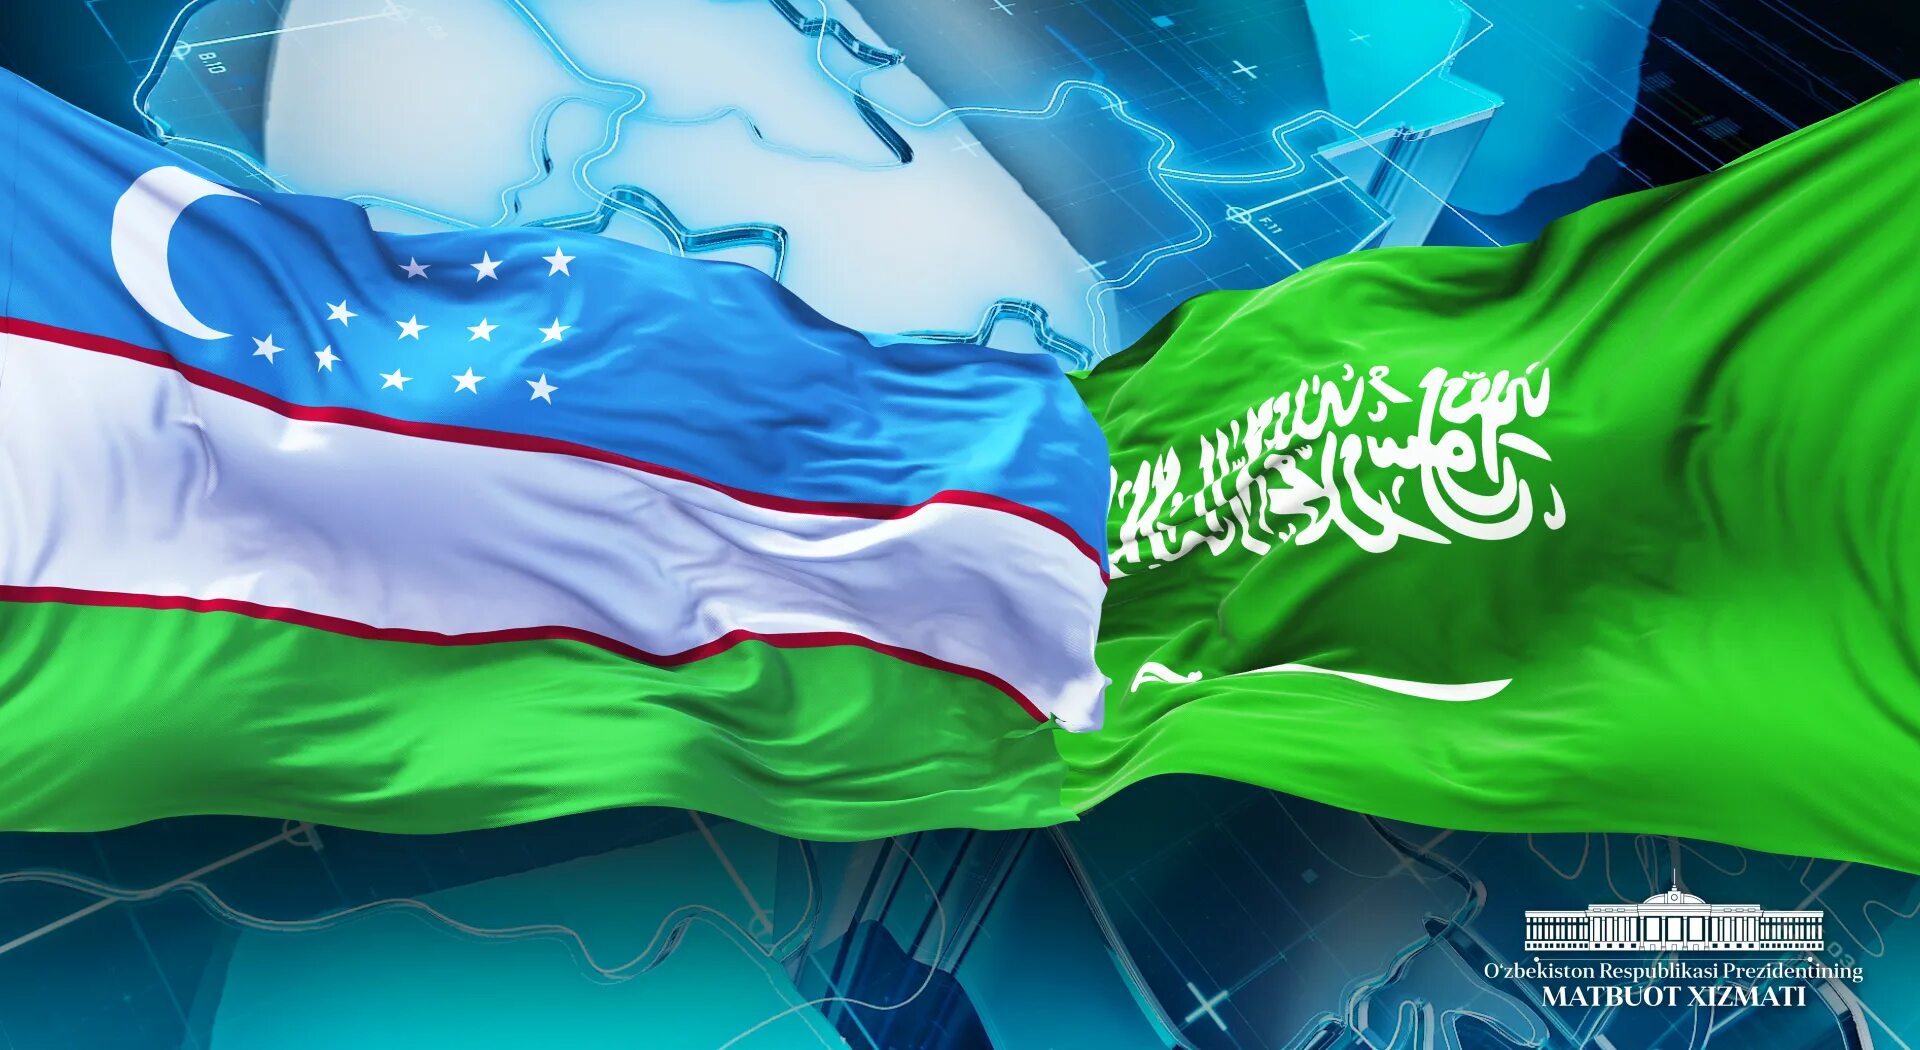 Uzb turk. Узбекистан и Казахстан флаги. Флаг Узбекистана и Туркменистана. Узбекистан и Китай флаг. Флаги Узбекистана и Саудовской Аравии.